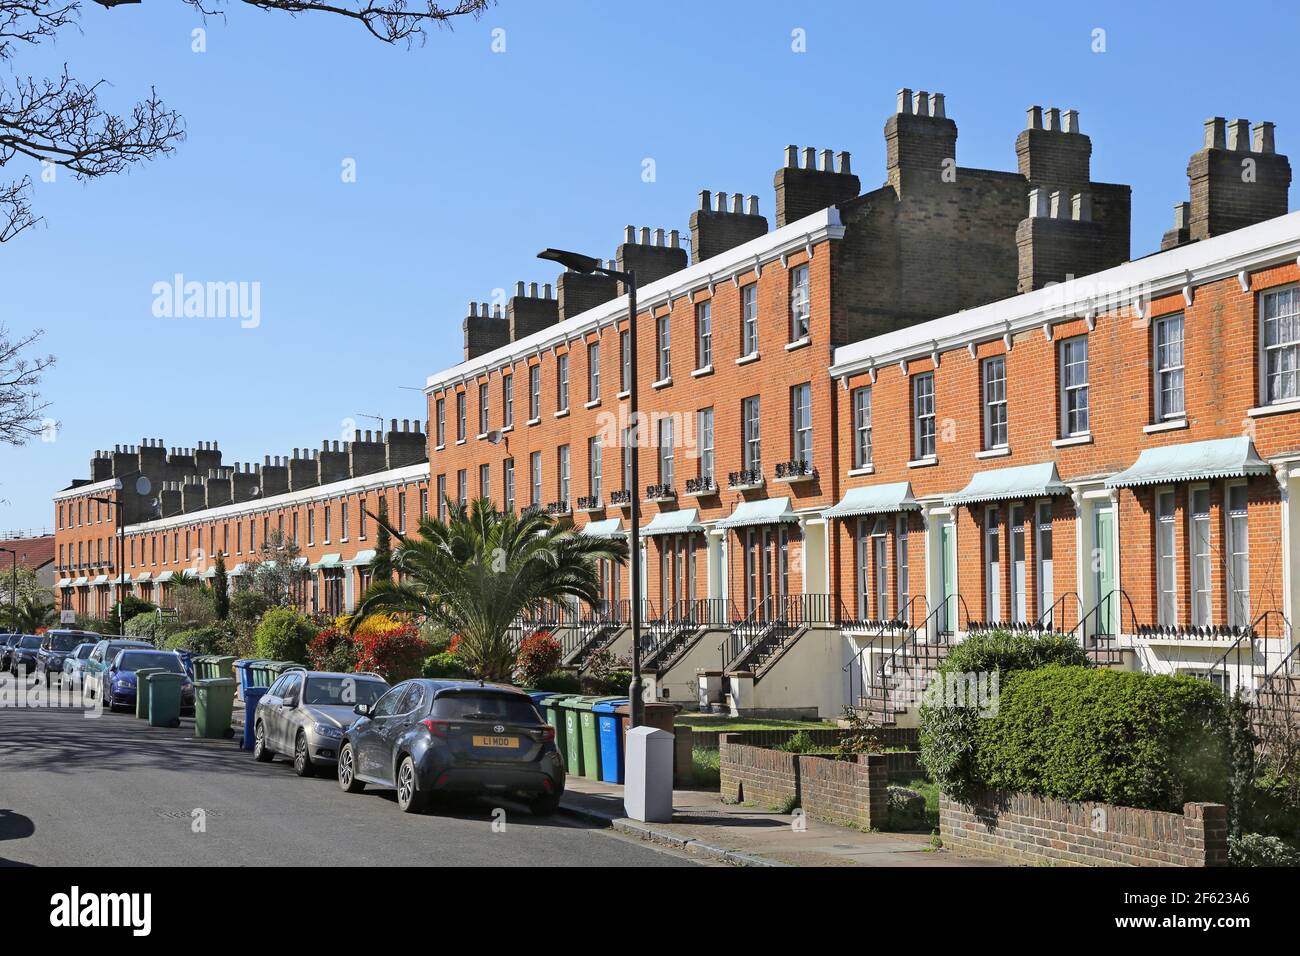 Clifton Crescent, Peckham, Londra, Regno Unito. Una famosa fila di case vittoriane del periodo Regency. Minacciato di demolizione negli anni '70 - ora elencato. Foto Stock